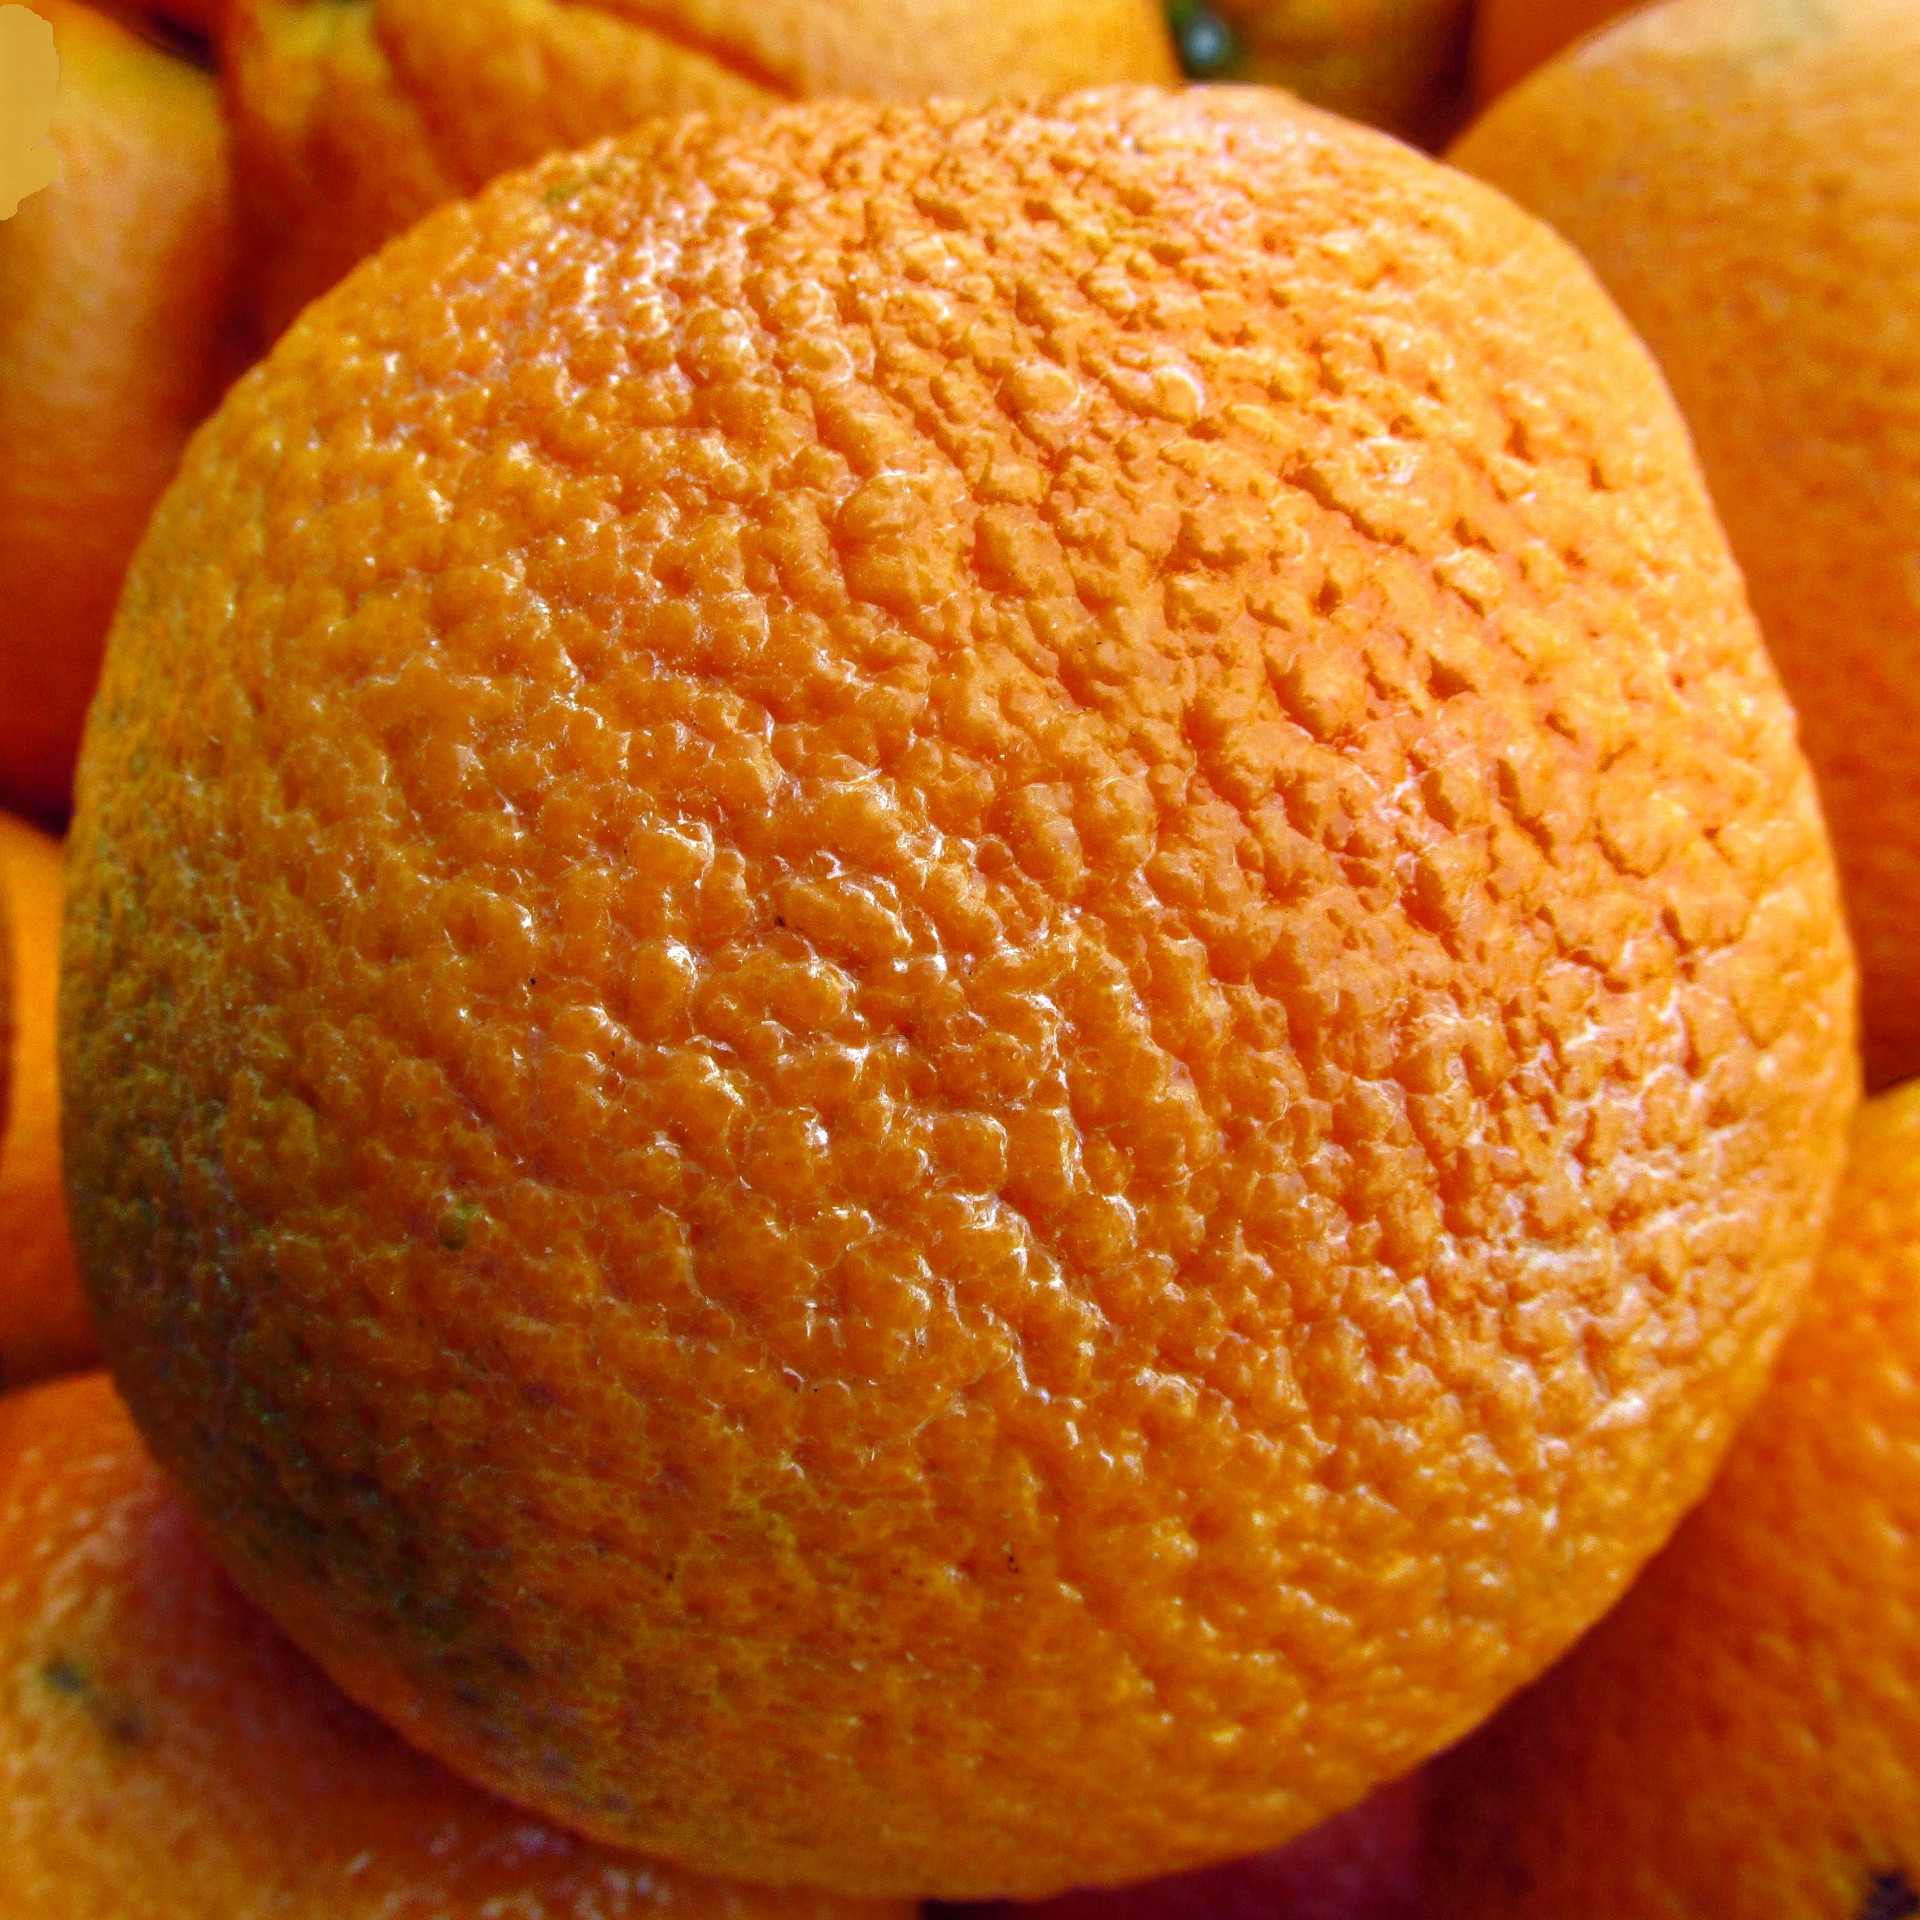 orange oranges closeup free photo